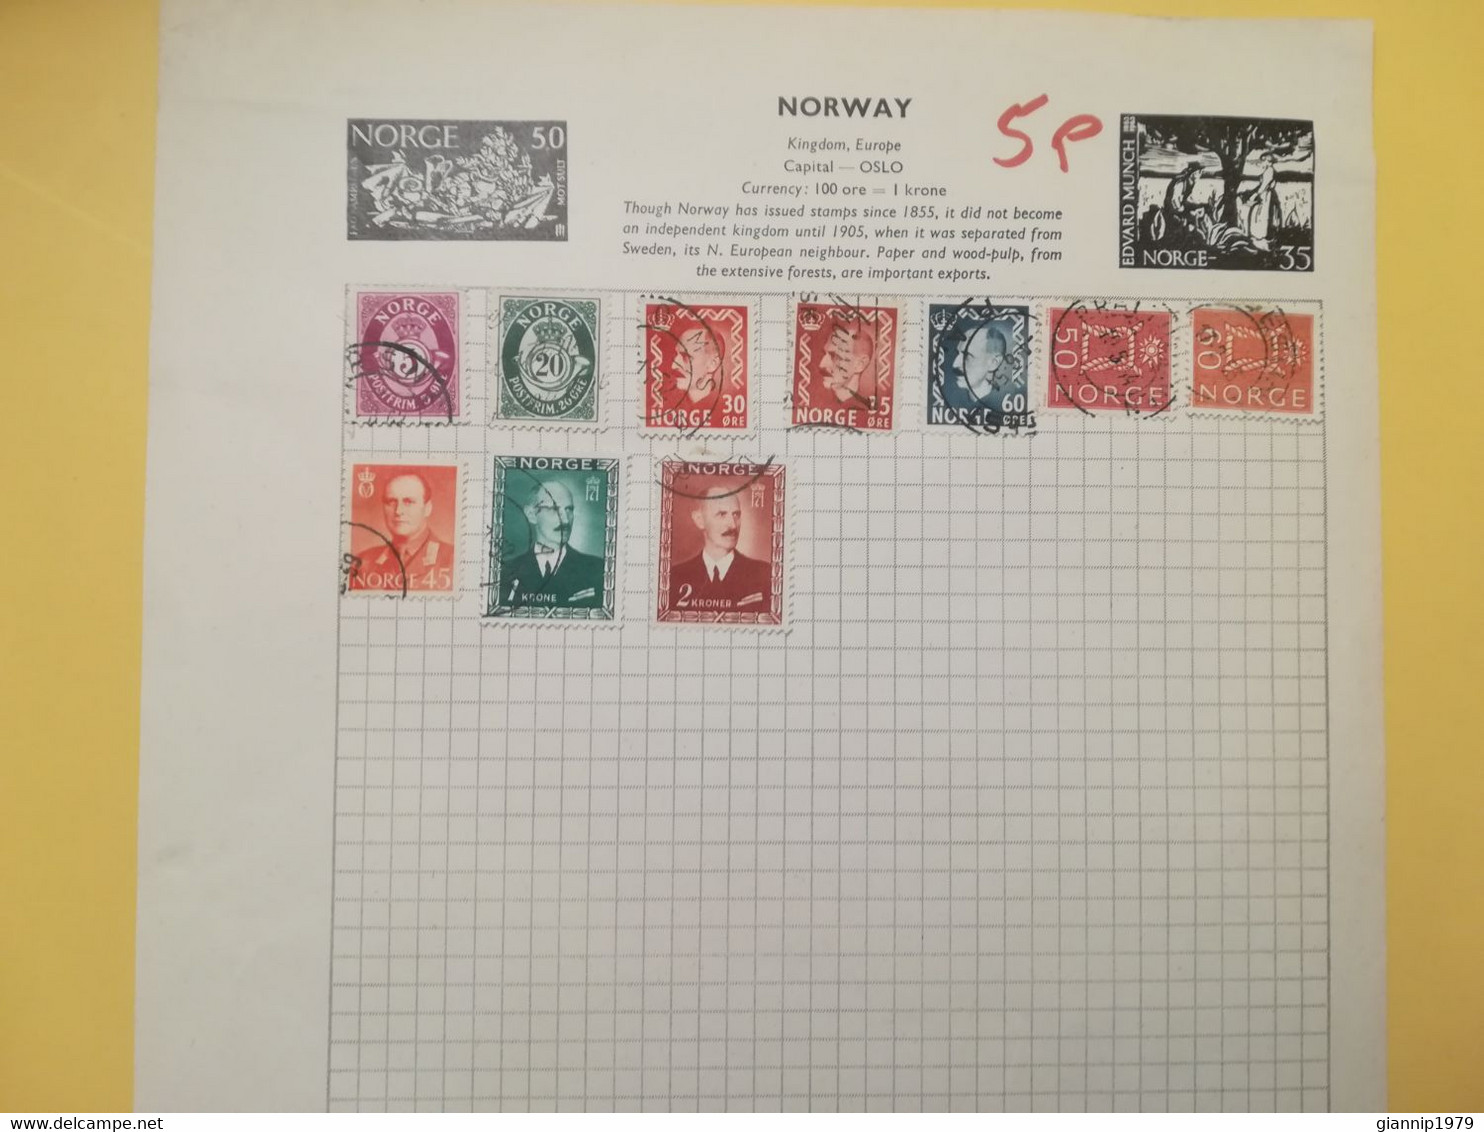 PAGINA PAGE ALBUM NORVEGIA NORGE NORWAY 1921 ATTACCATI PAGE WITH STAMPS COLLEZIONI LOTTO LOT LOTS - Colecciones